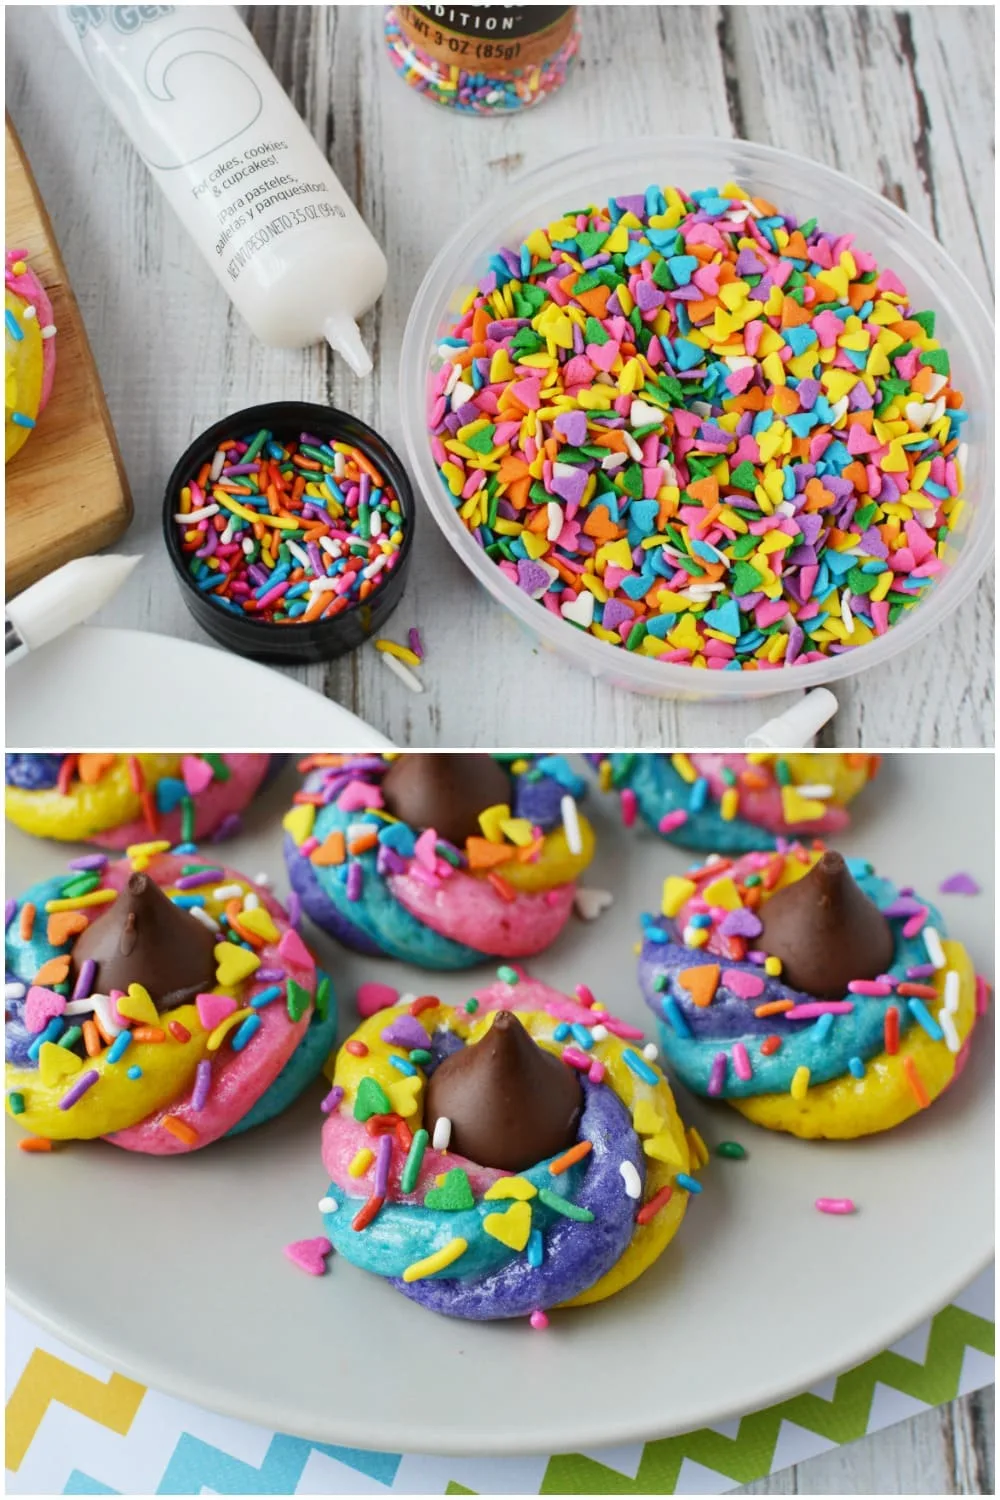 Sprinkles and gel used to decorate unicorn poop cookies.